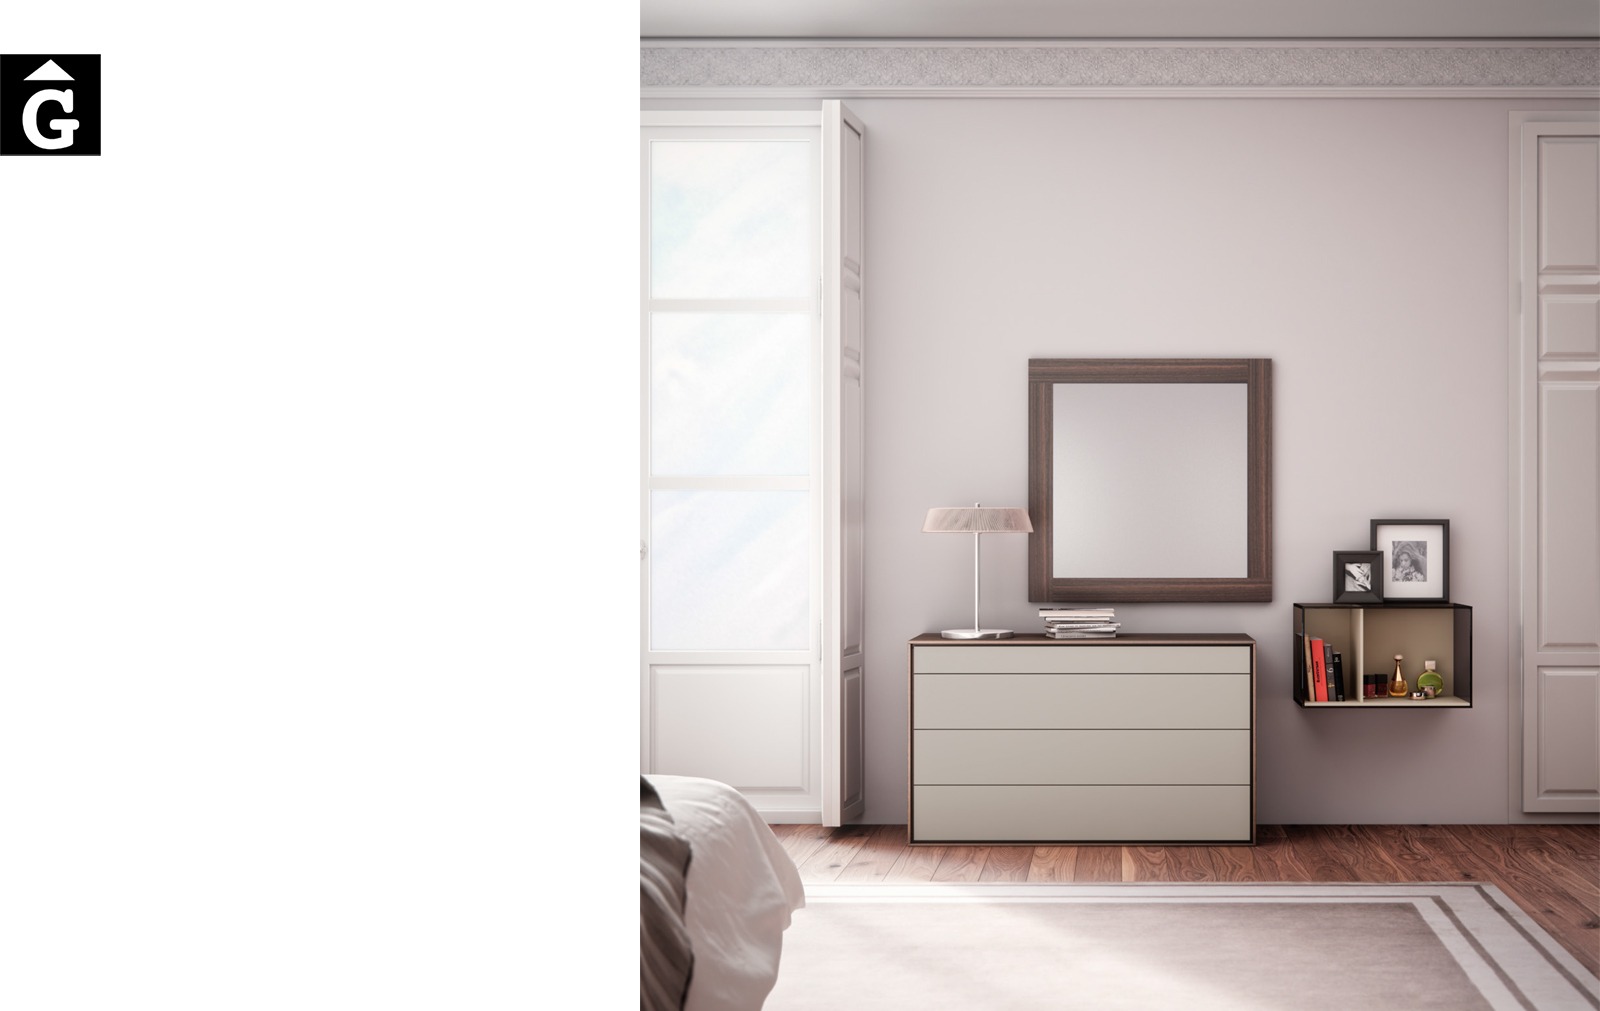 4-bedrooms-emede-md-by-mobles-gifreu-llits-grans-matrimoni-singel-disseny-actual-qualitat-premium